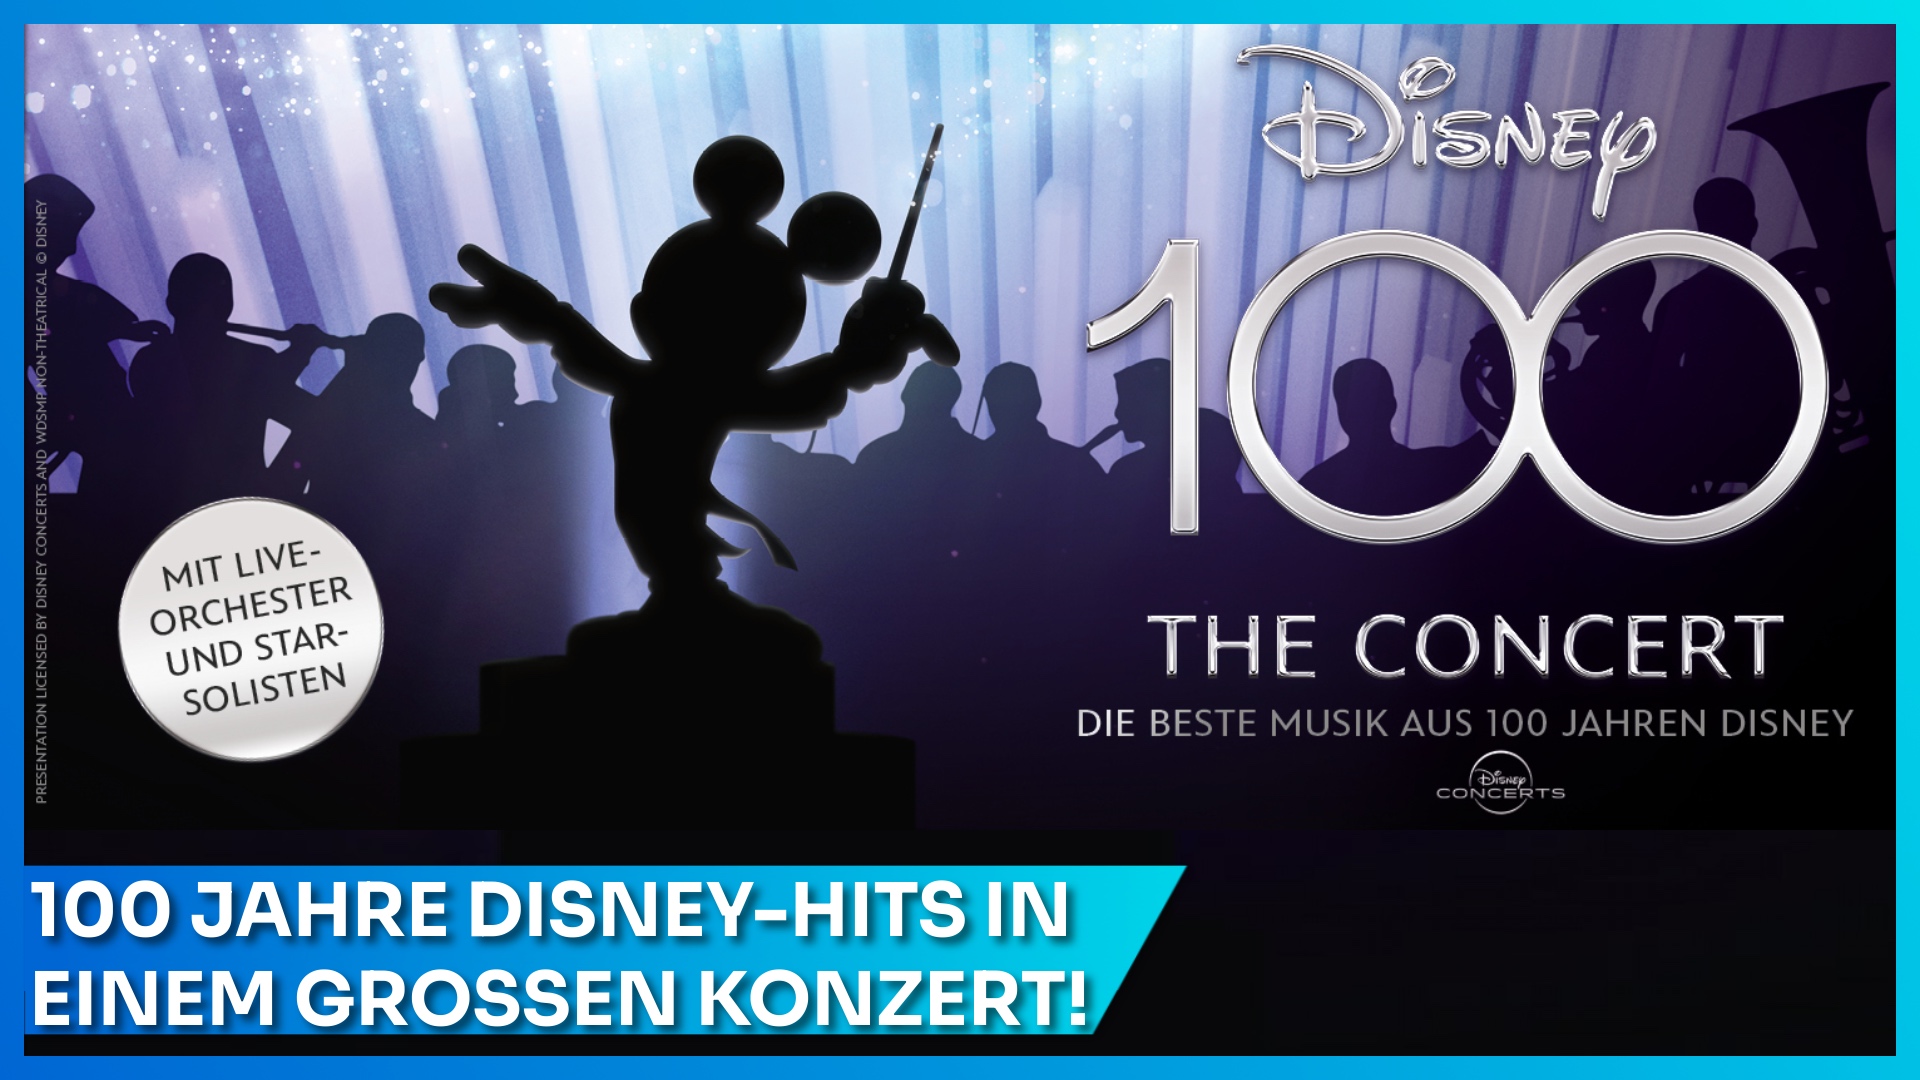 Disney 100 - The Concert auf Deutschland Tour in 2023